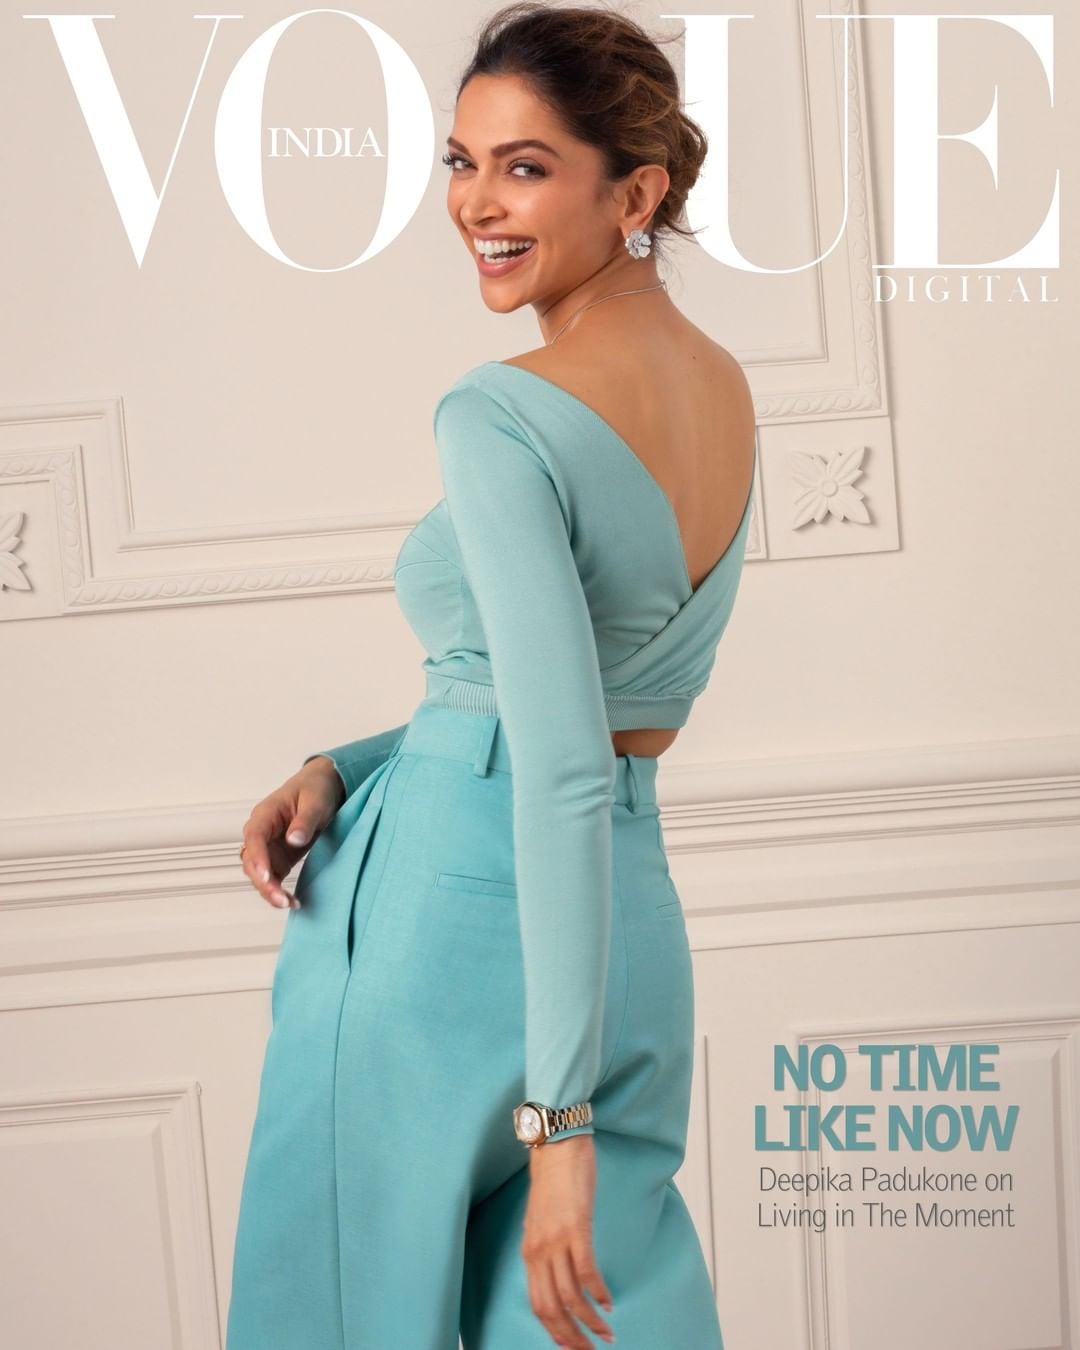 Deepika Padukone strikes a pose for Vogue!